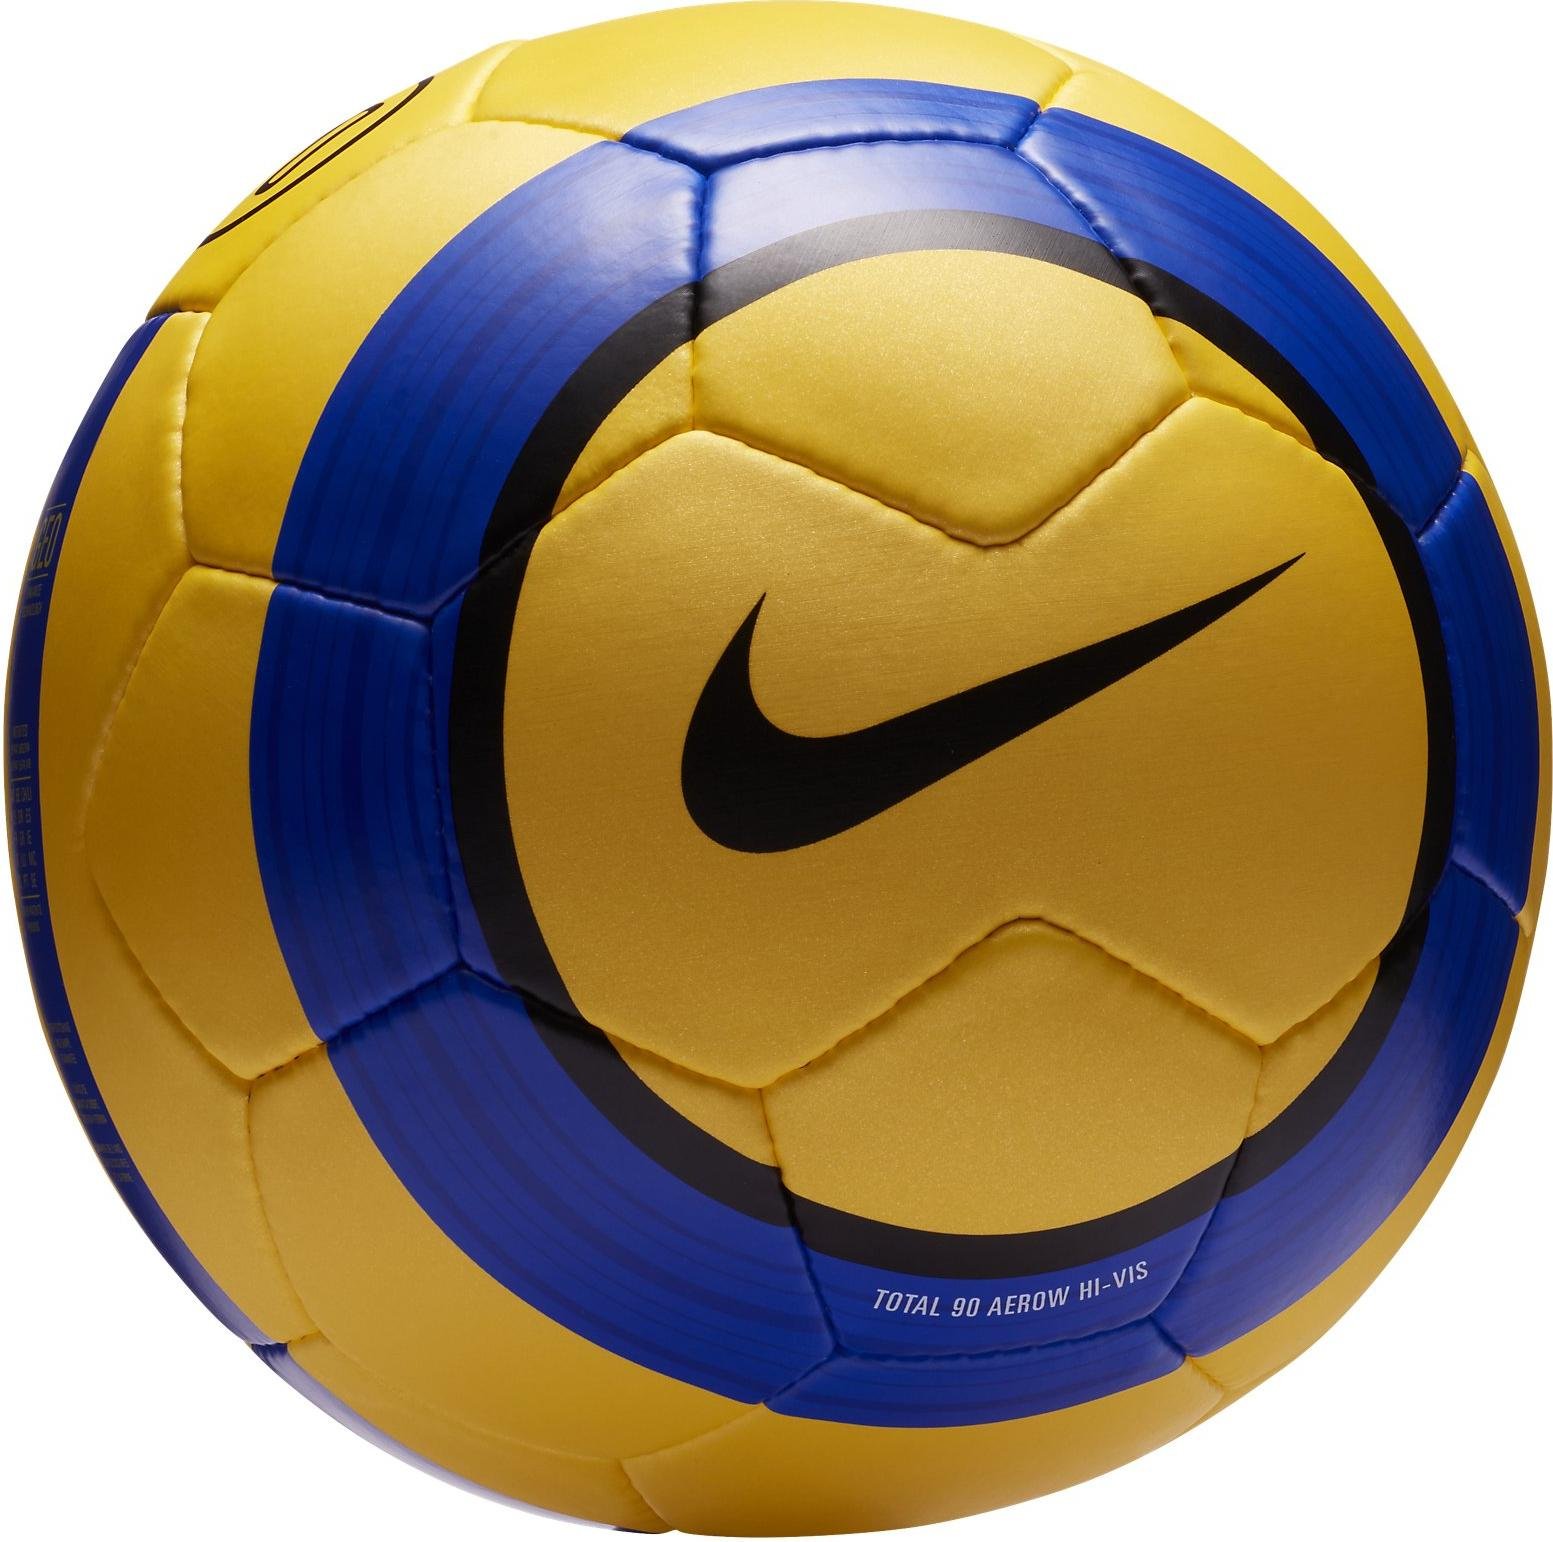 Anual Sumergido Malgastar Balón Nike PL NK T90 AEROW HI-VIS - 11teamsports.es